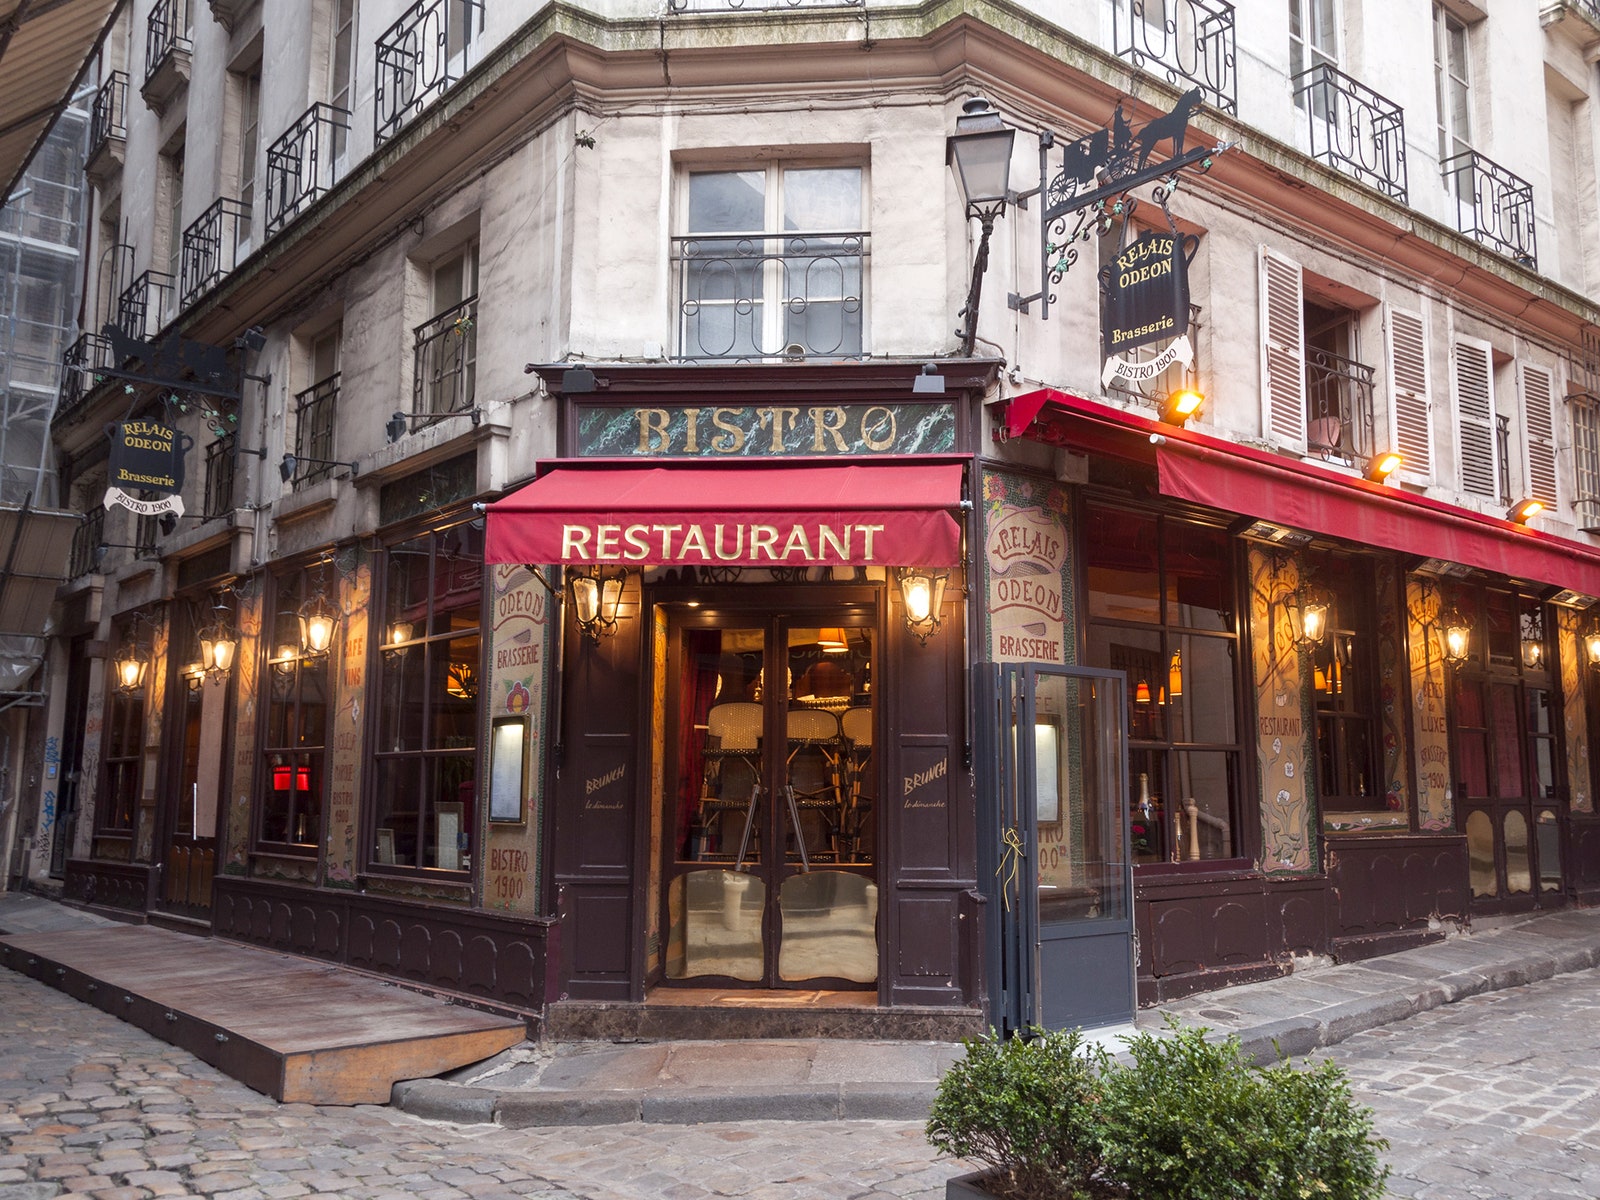 20 điểm du lịch nổi tiếng ở Paris bạn không nên bỏ qua khi đi du lịch Pháp - Ảnh 19